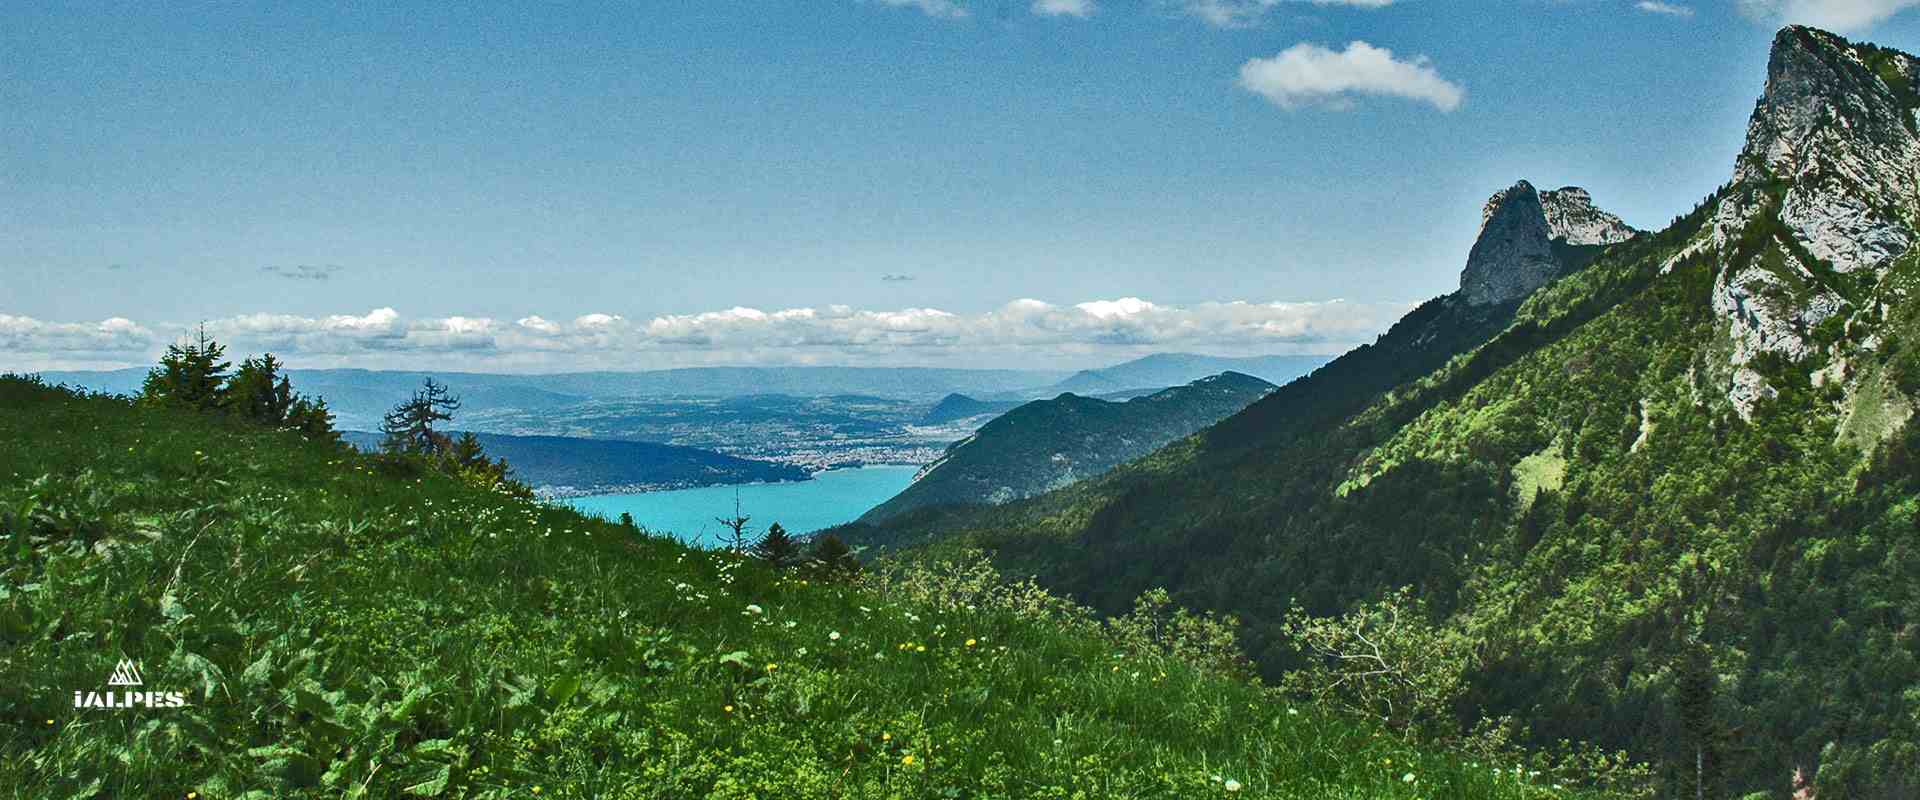 Bateau croisière sur le lac d'Annecy, Haute-Savoie